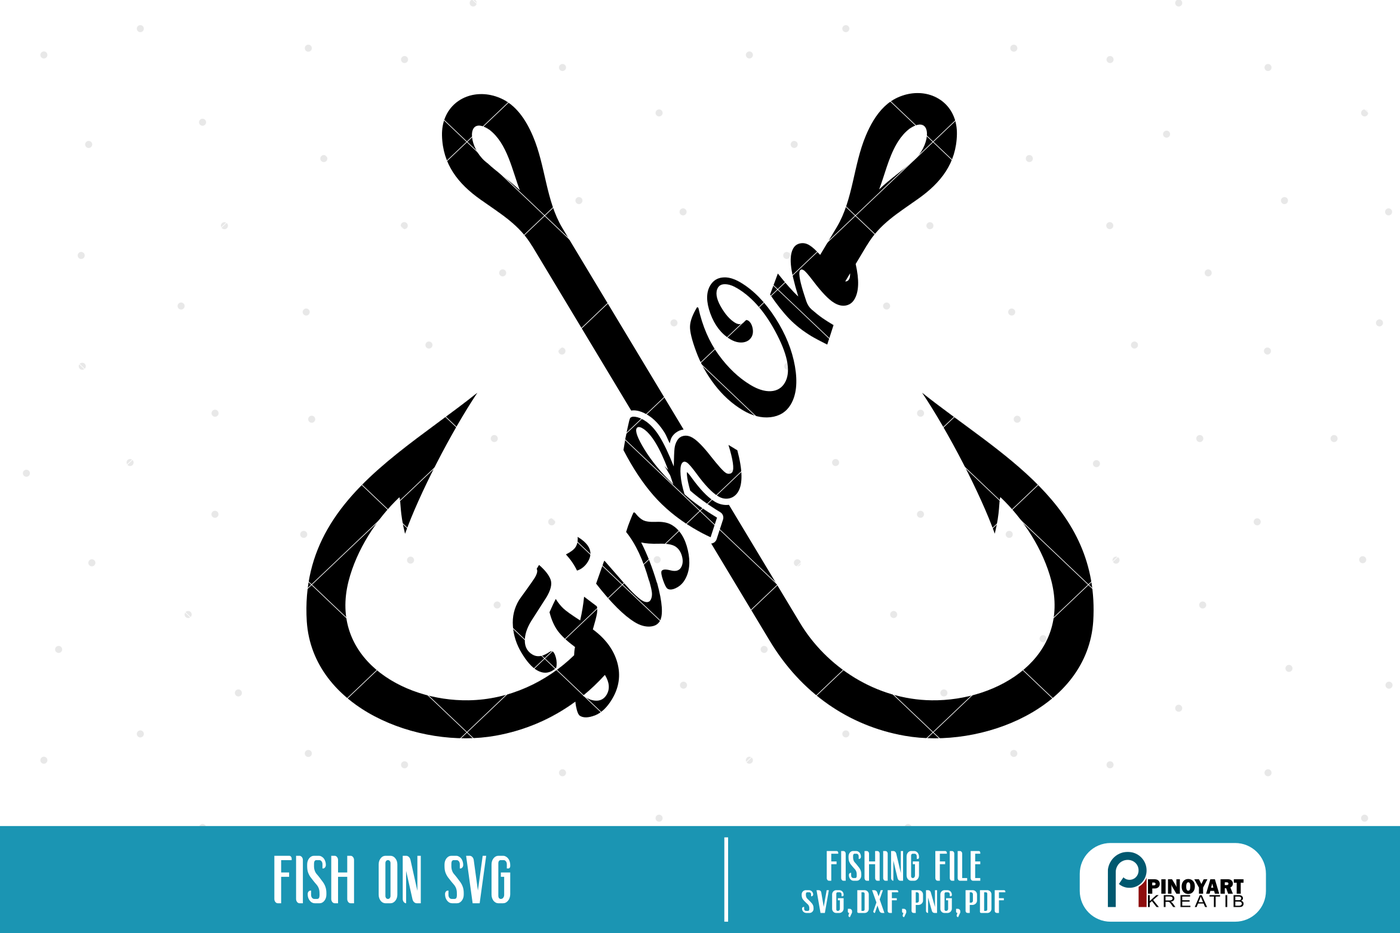 ori 3434252 c89764848a9d23b084fec6a83cfa80483246c825 fishing svg fish on svg fishing svg fishing svg file fish svg fish